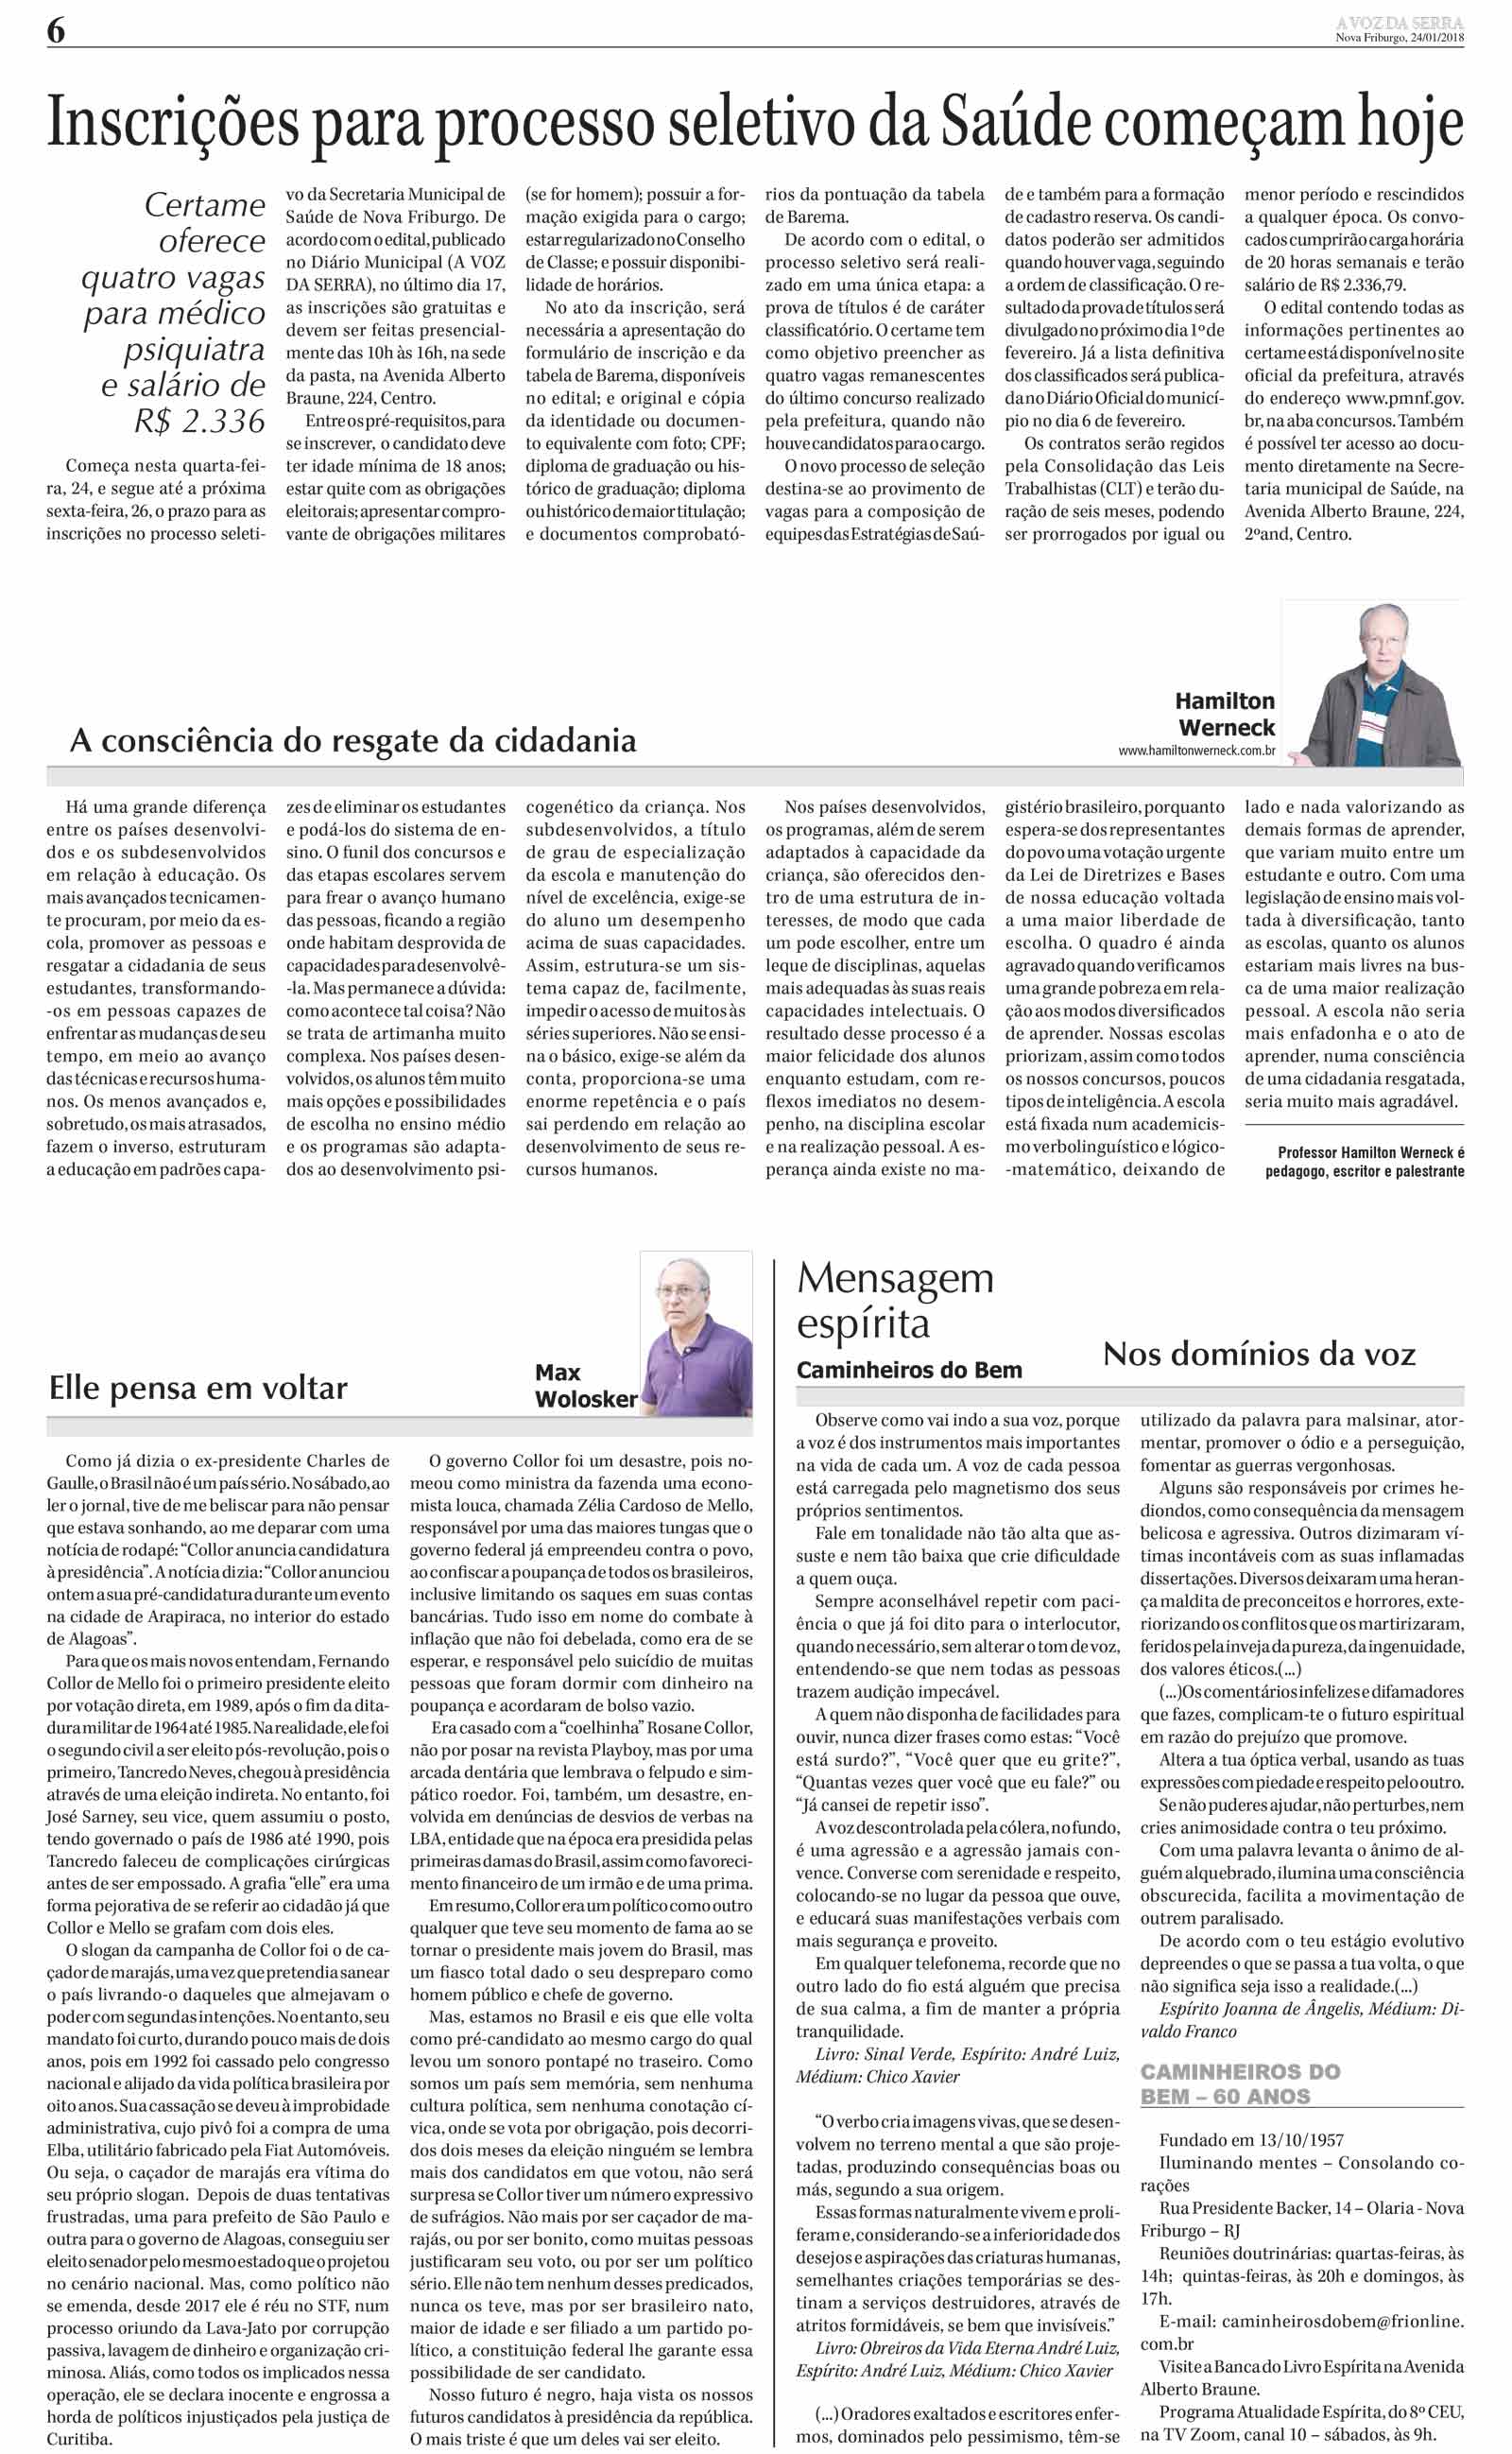 Edição De 24 De Janeiro De 2018 Jornal A Voz Da Serra